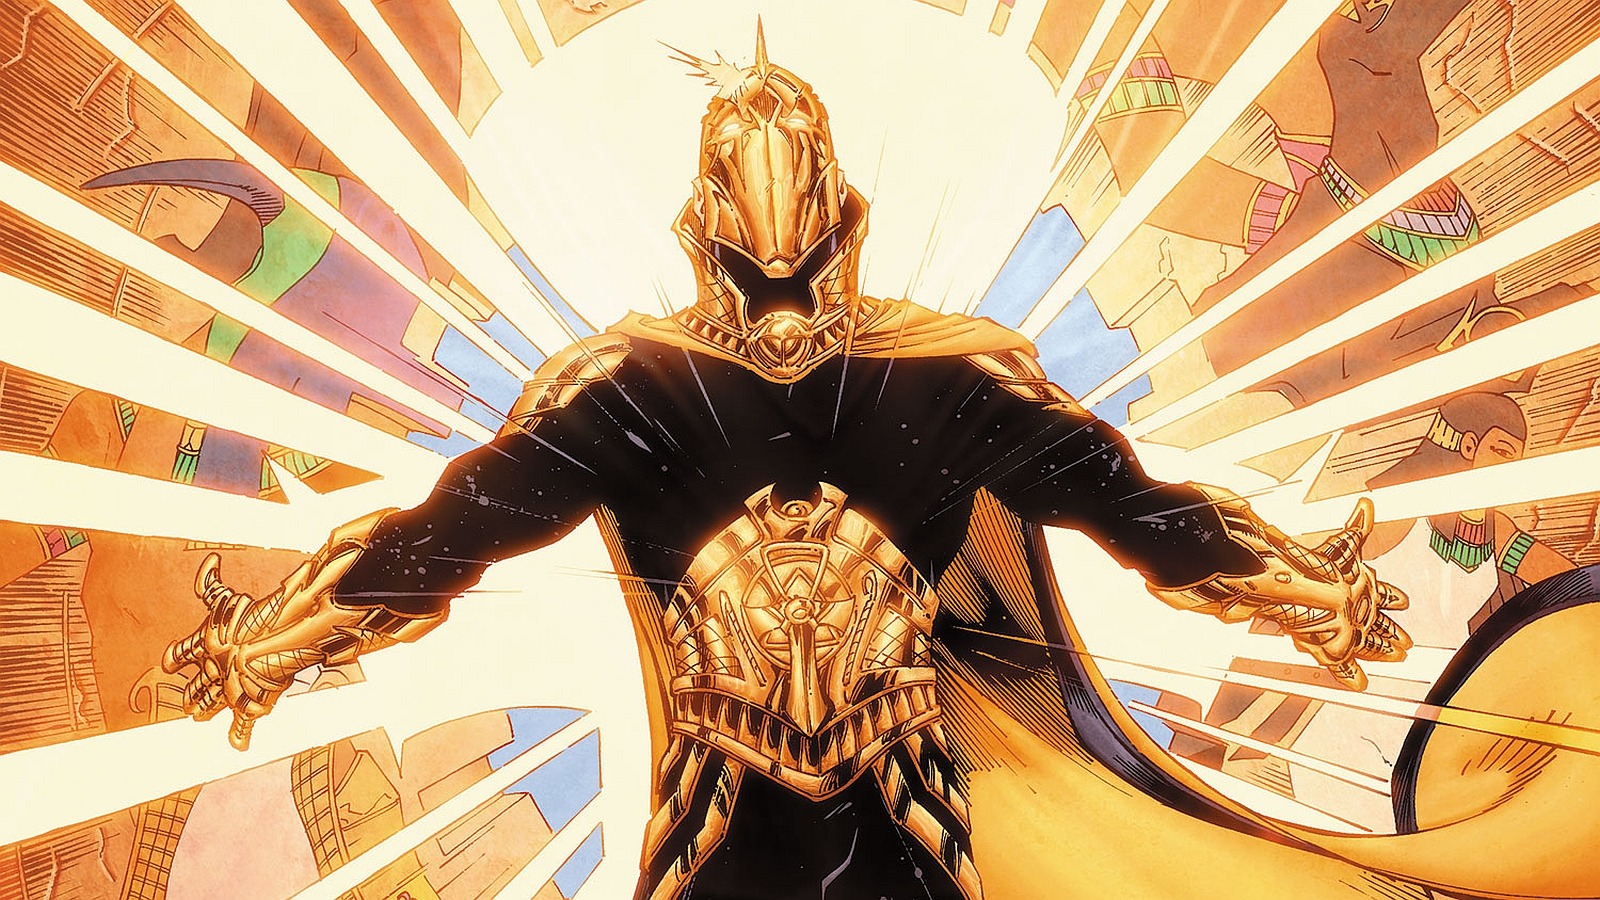 Điểm qua những siêu anh hùng sẽ có có mặt trong Black Adam, phù thuỷ quyền năng Dr. Fate và còn có cả Atom Smasher